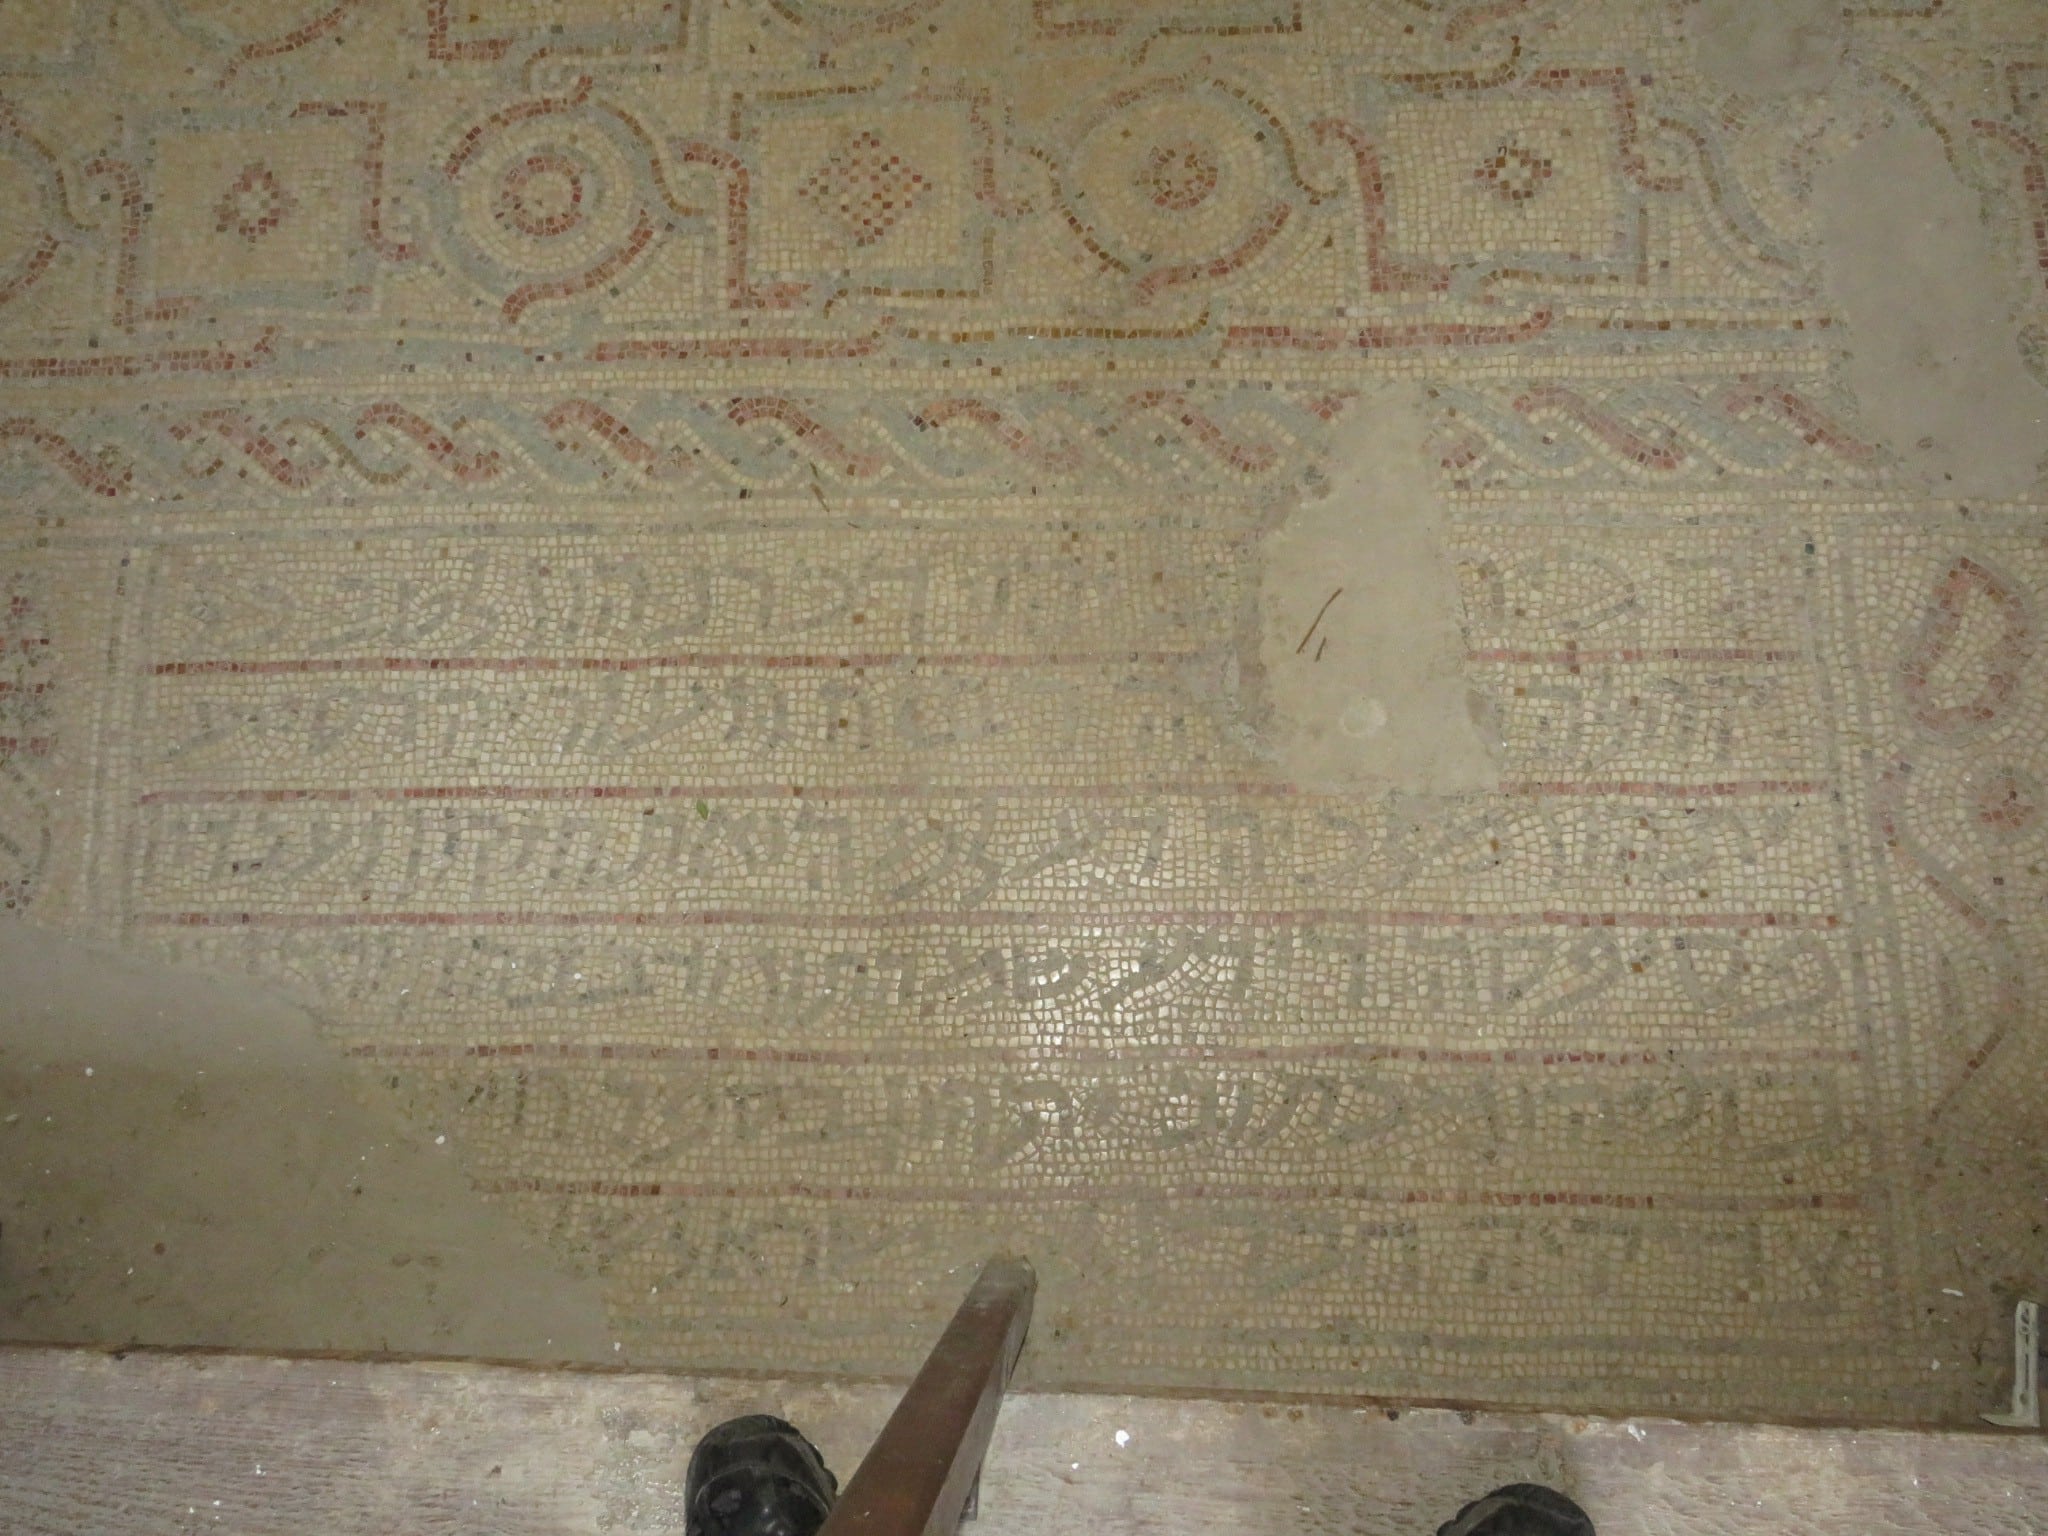 הפסיפס בבית הכנסת העתיק שלום על ישראל